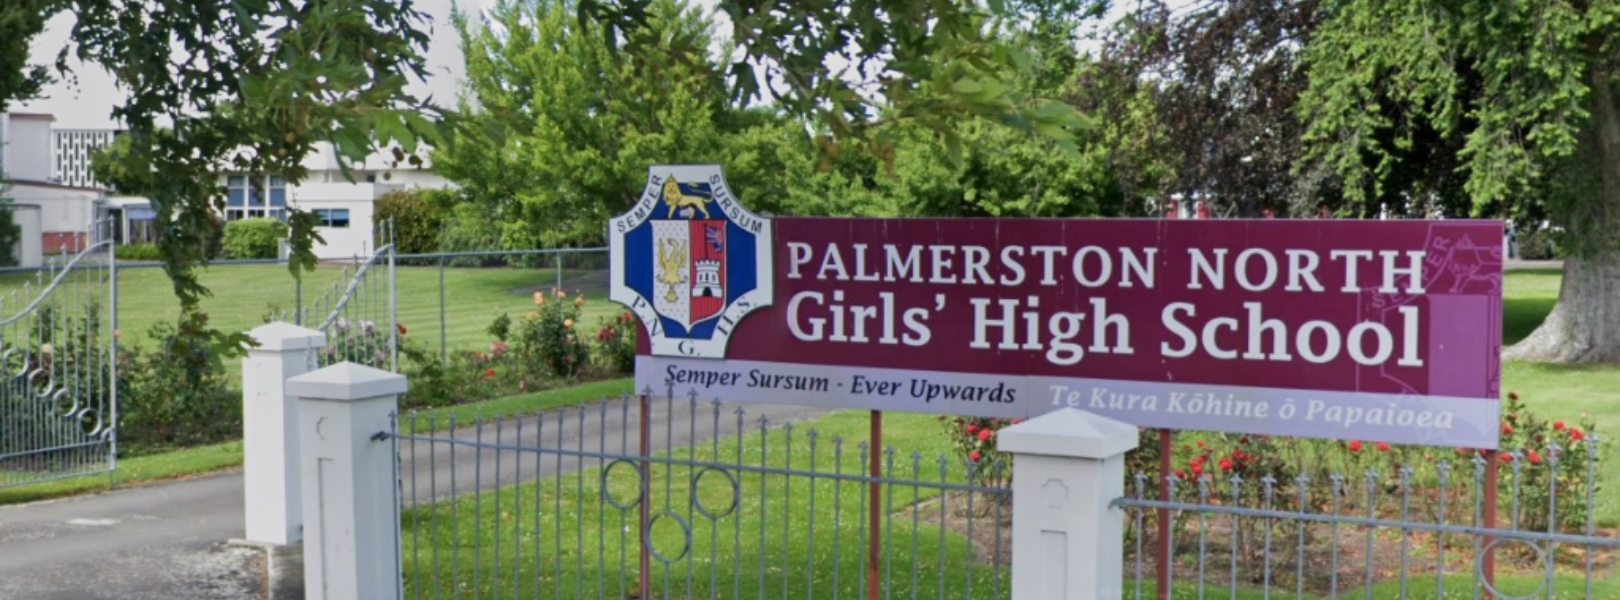 Palmerston North Girls' High School